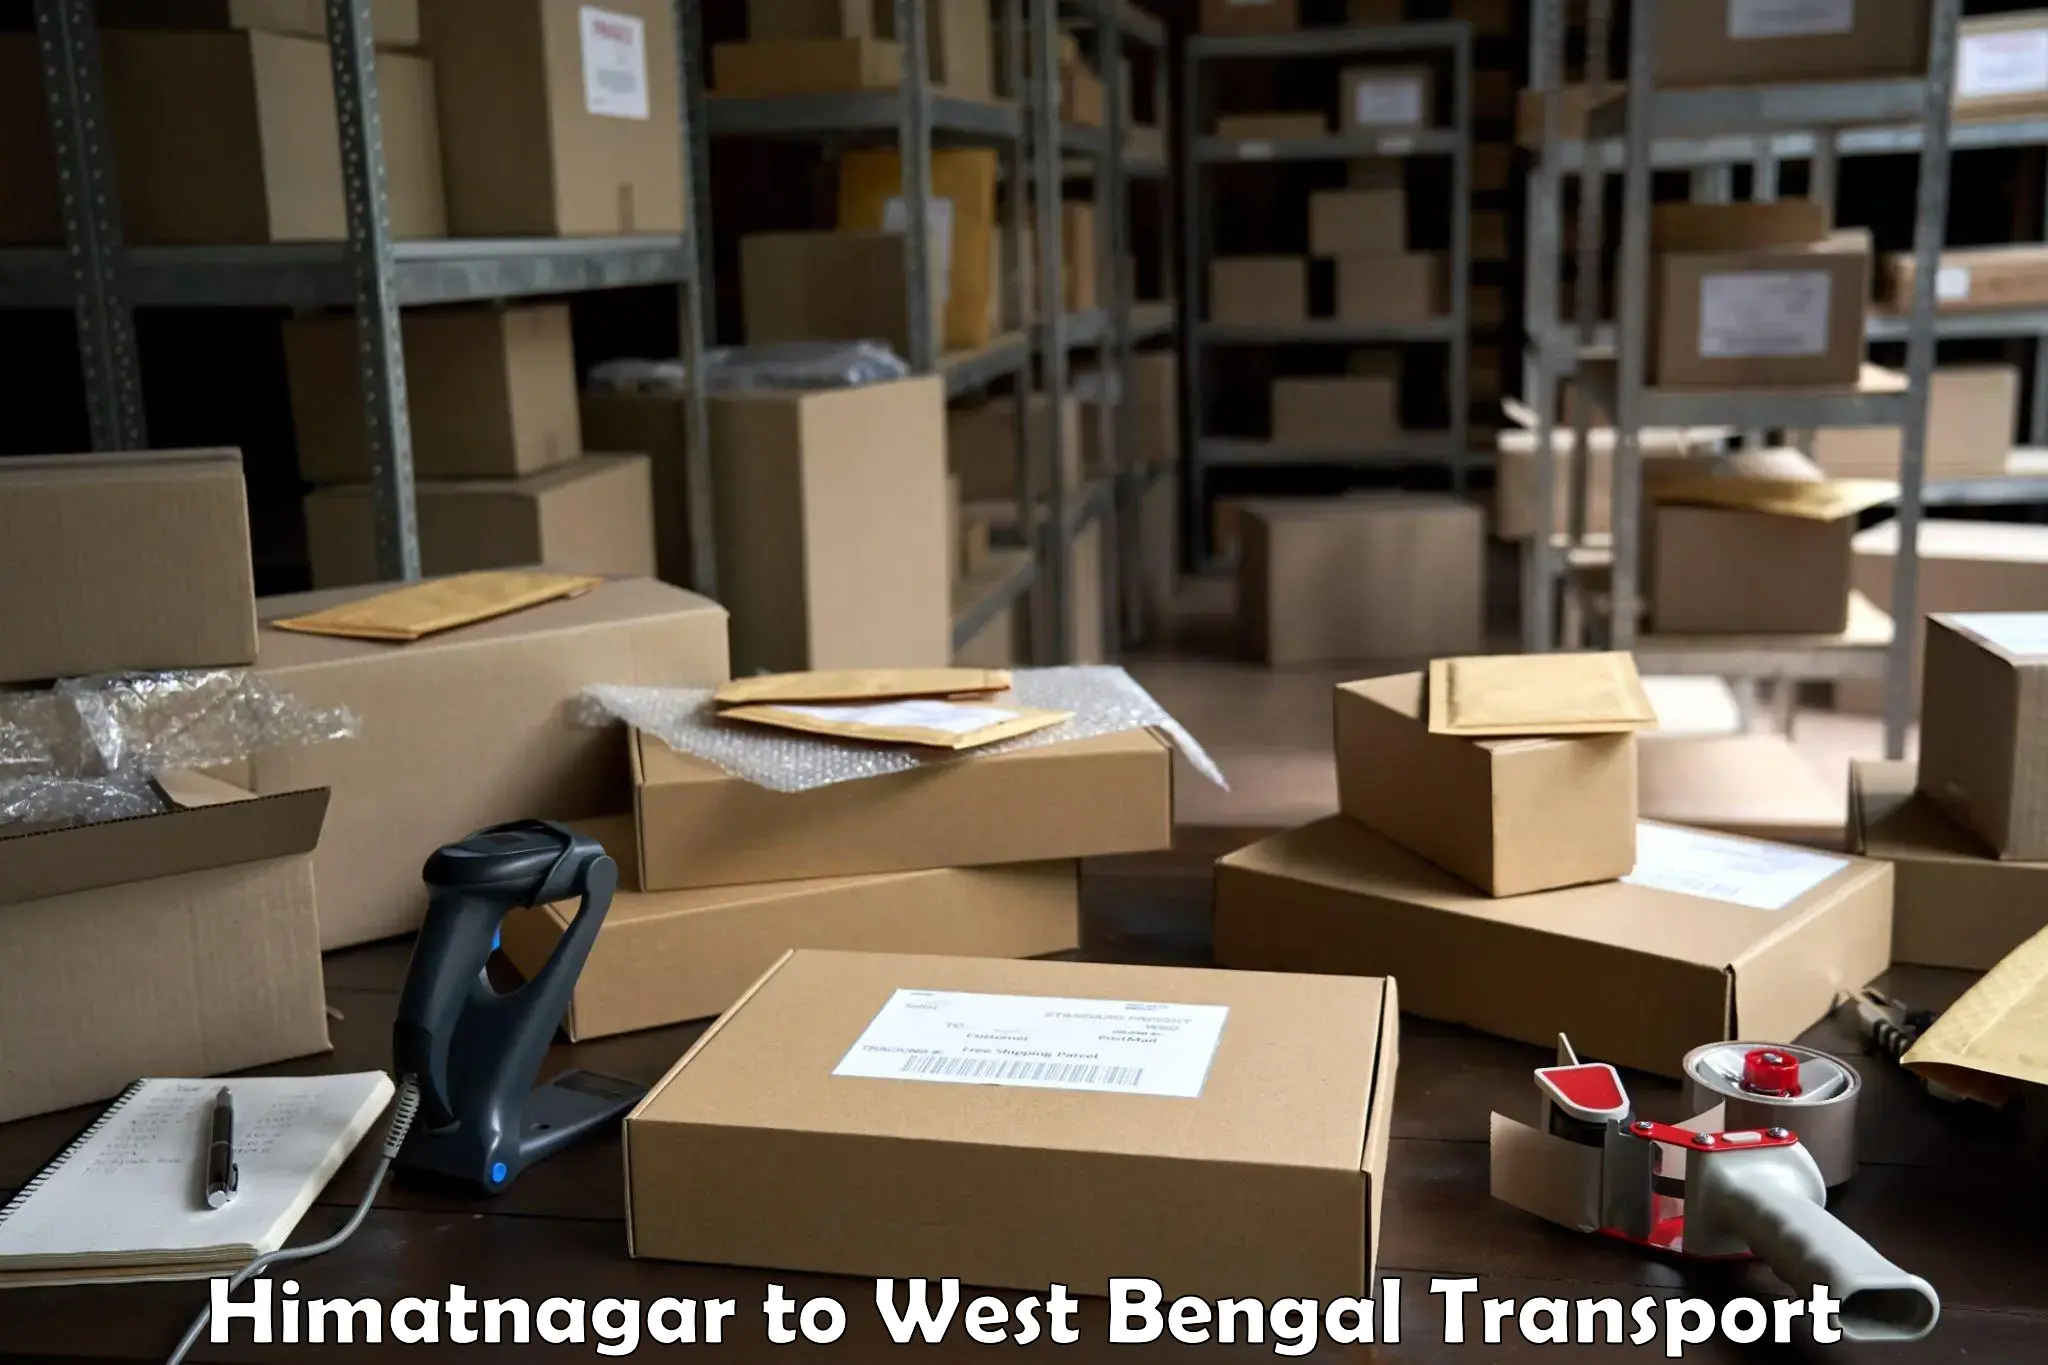 Online transport service Himatnagar to Medinipur